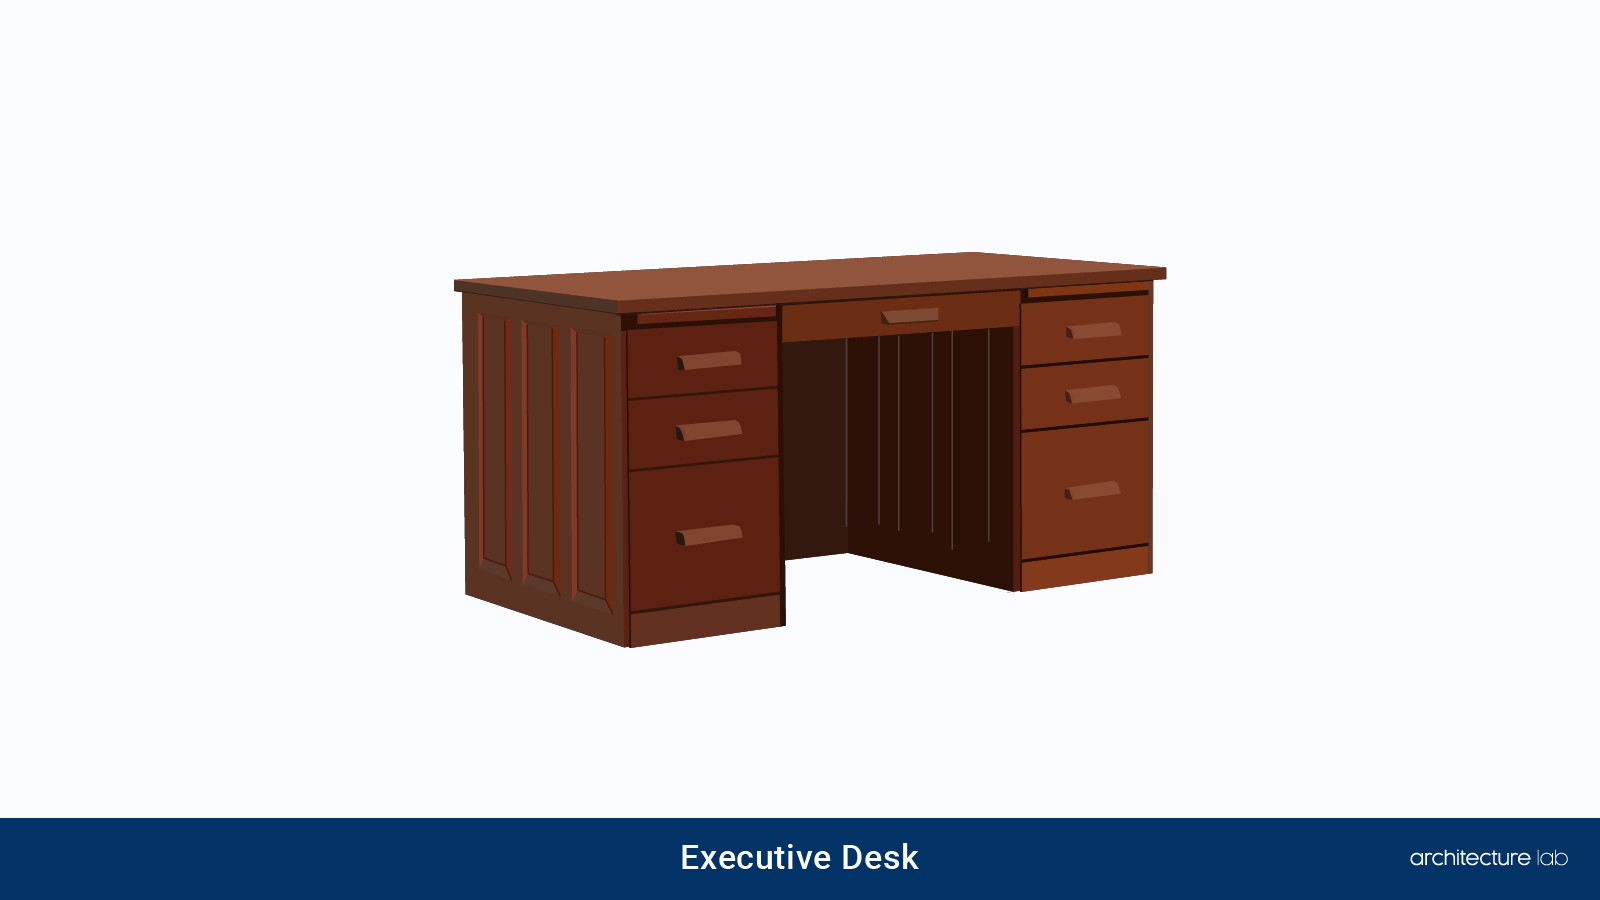 3. Executive desk